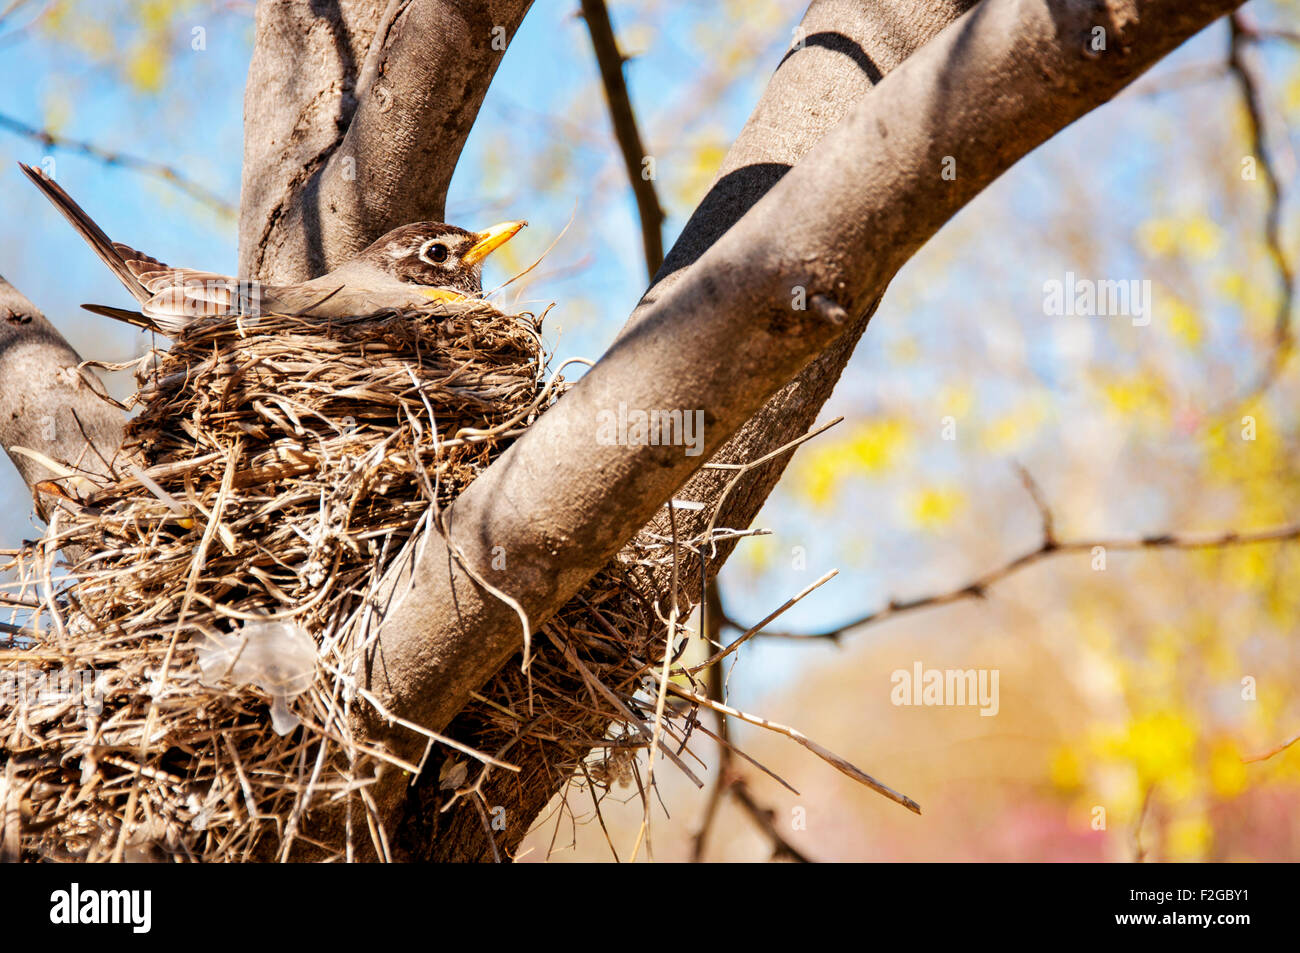 Robin on nest Stock Photo